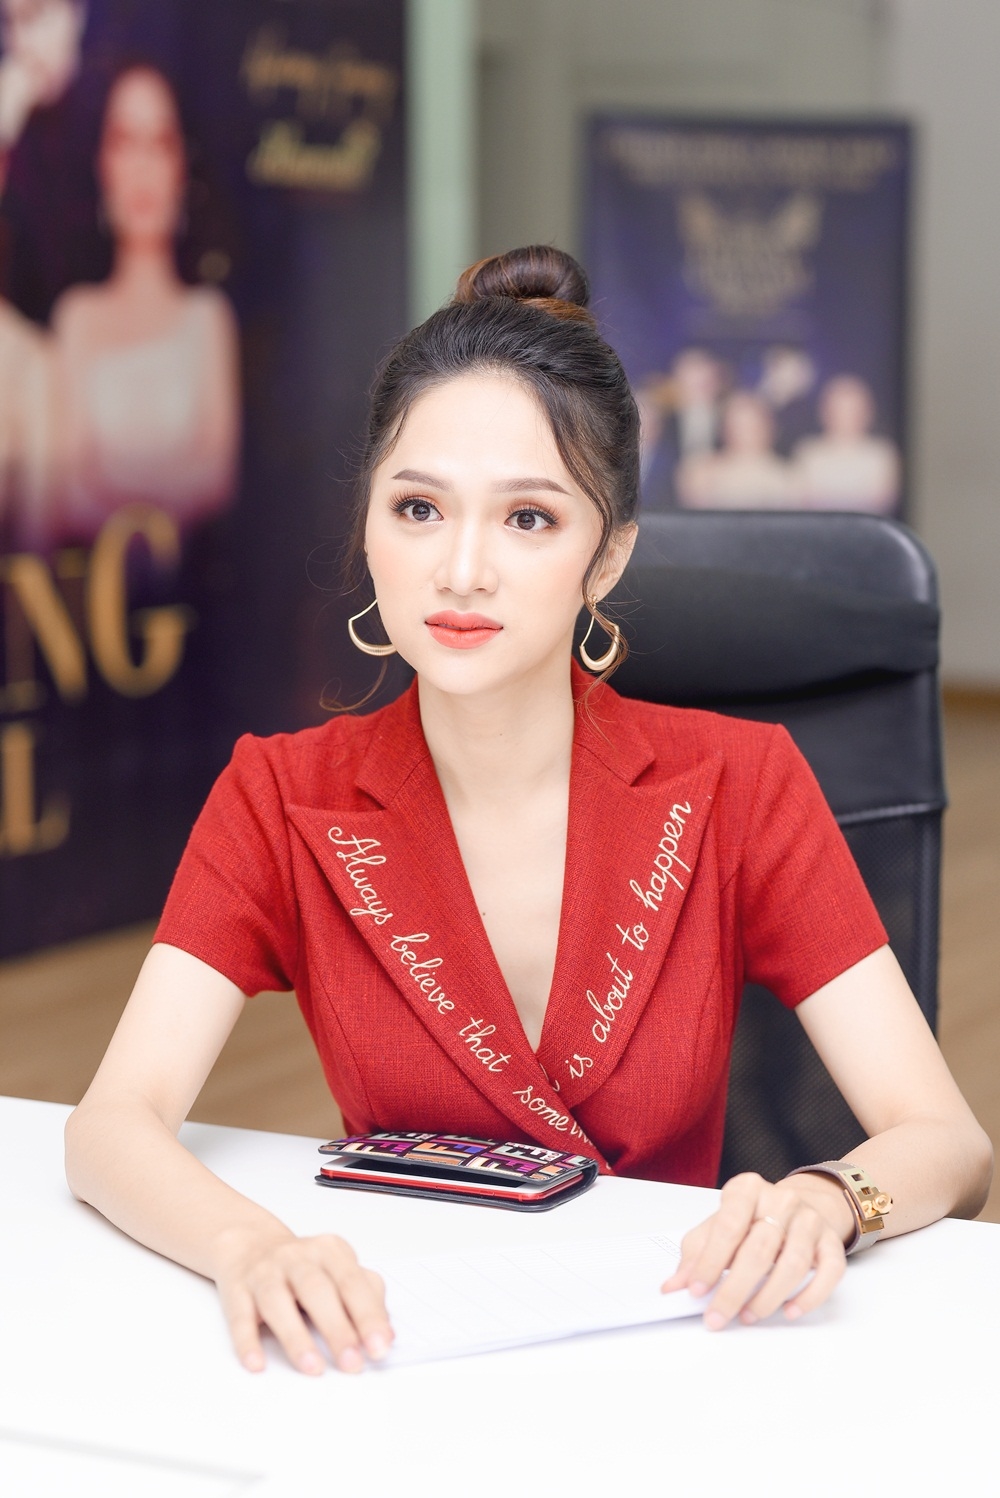 
Hương Giang là một trong những giám khảo chính của cuộc thi The Tiffany Vietnam 2018 cùng với Gil Lê và NTK Đỗ Long. Người đẹp đã lựa chọn bộ váy sắc đỏ nổi bật để thu hút sự quan tâm của thí sinh. 